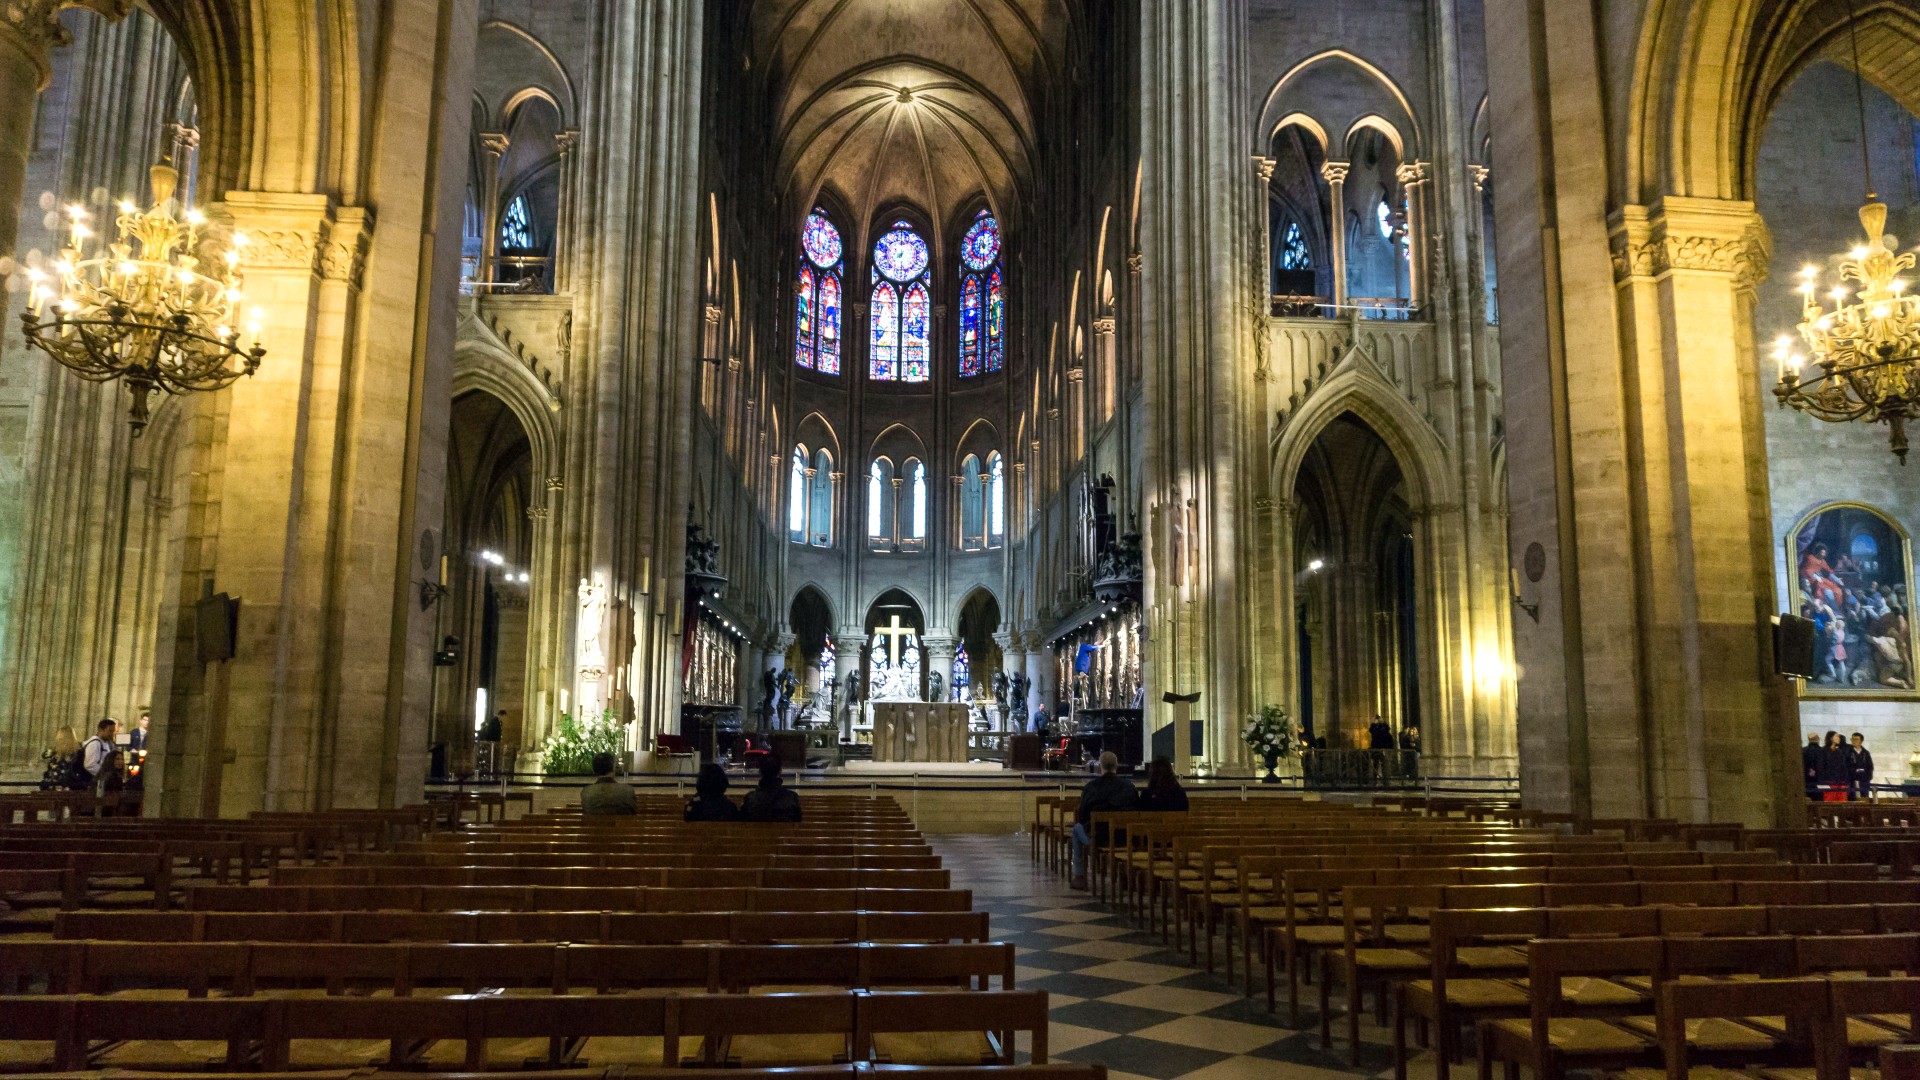 picture: La cathédrale parisienne des riches, banc, nef, france (image)